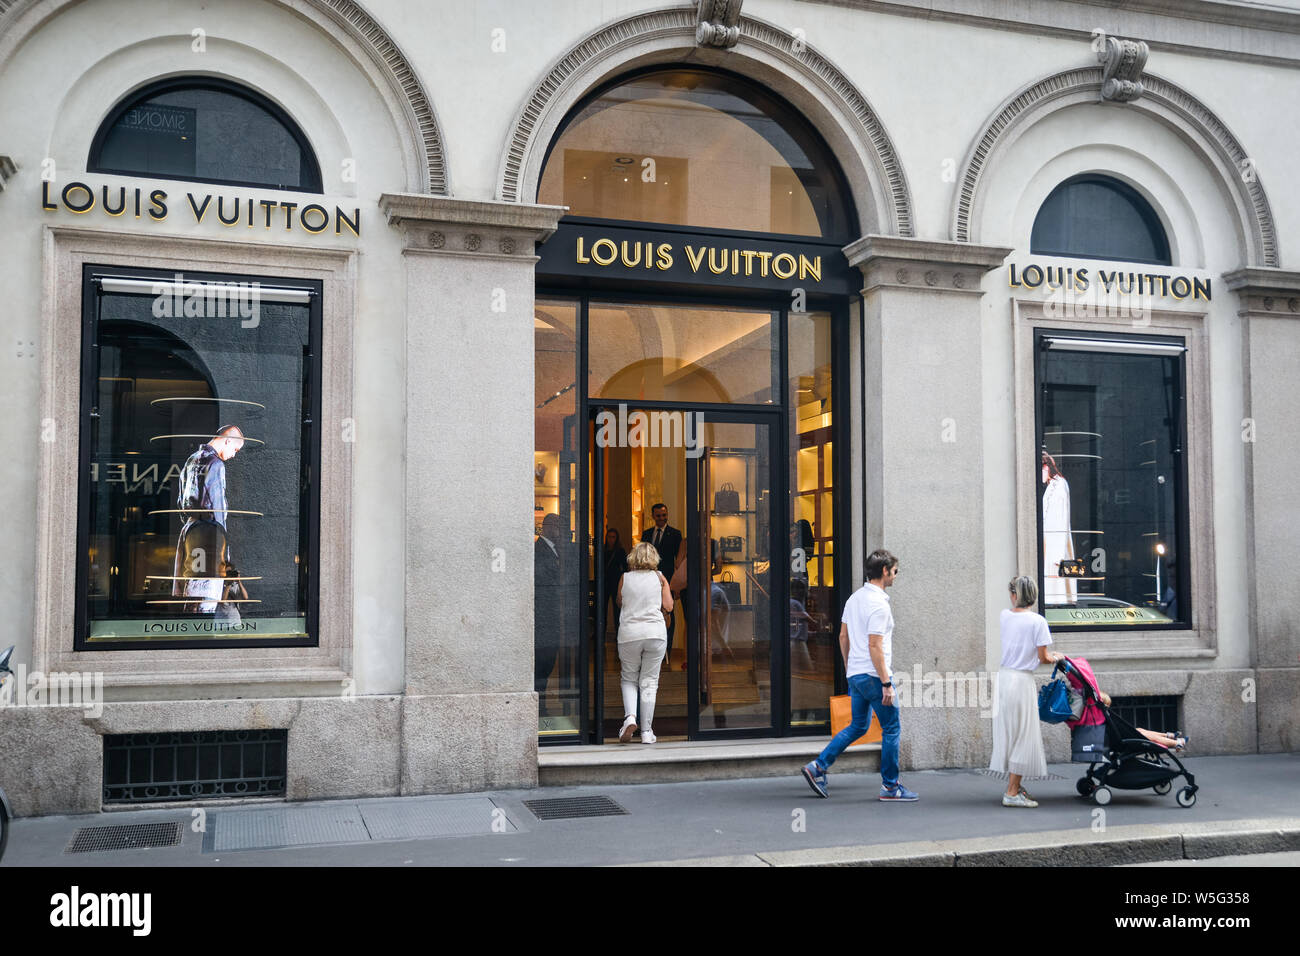 Milan, Italy - September 21, 2018: Louis Vuitton store in Milan